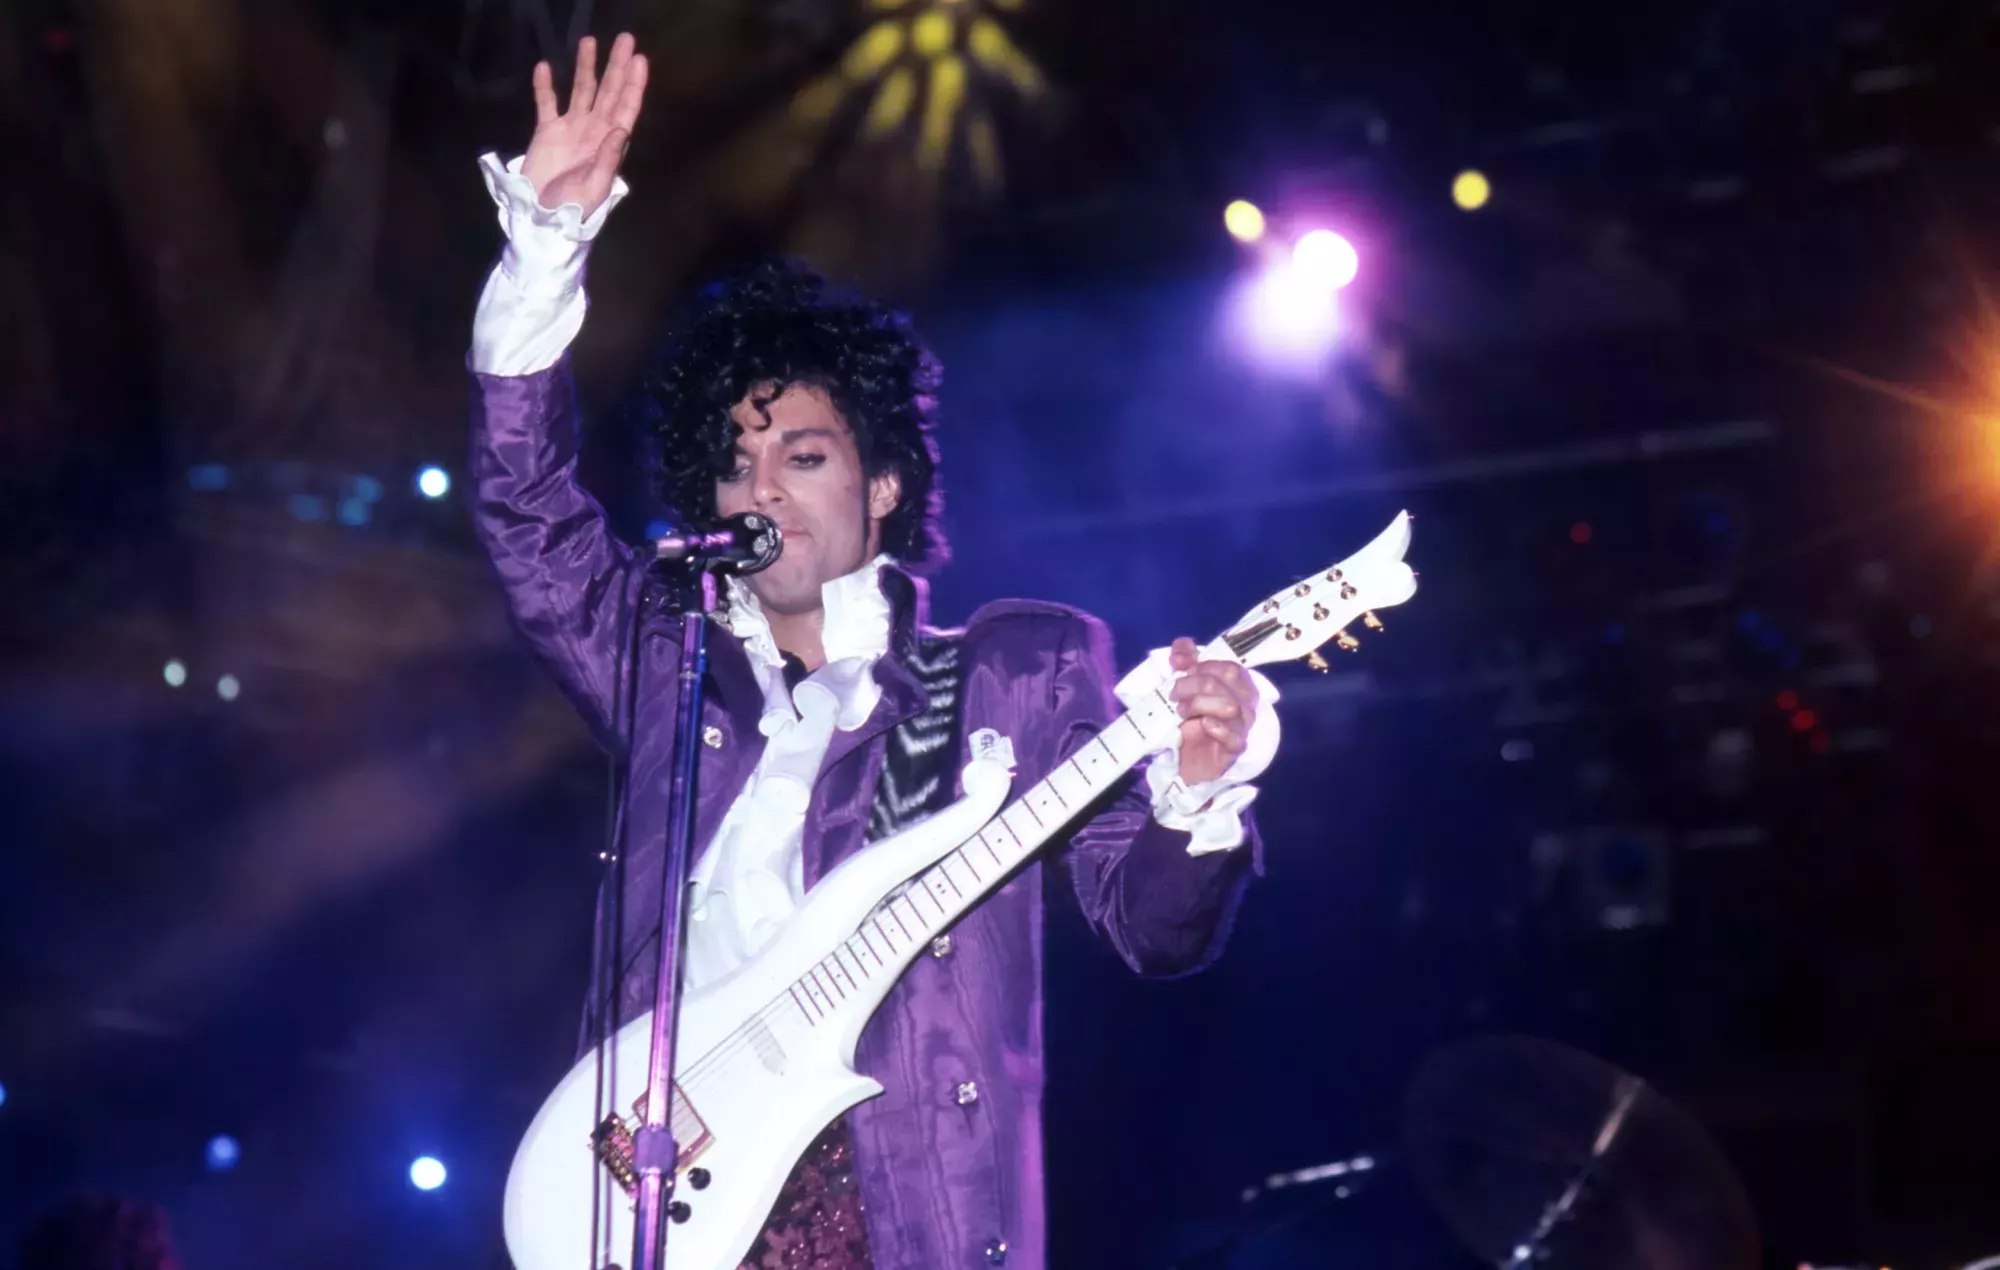 Escucha una nueva versión remezclada y remasterizada en directo de '1999' de Prince